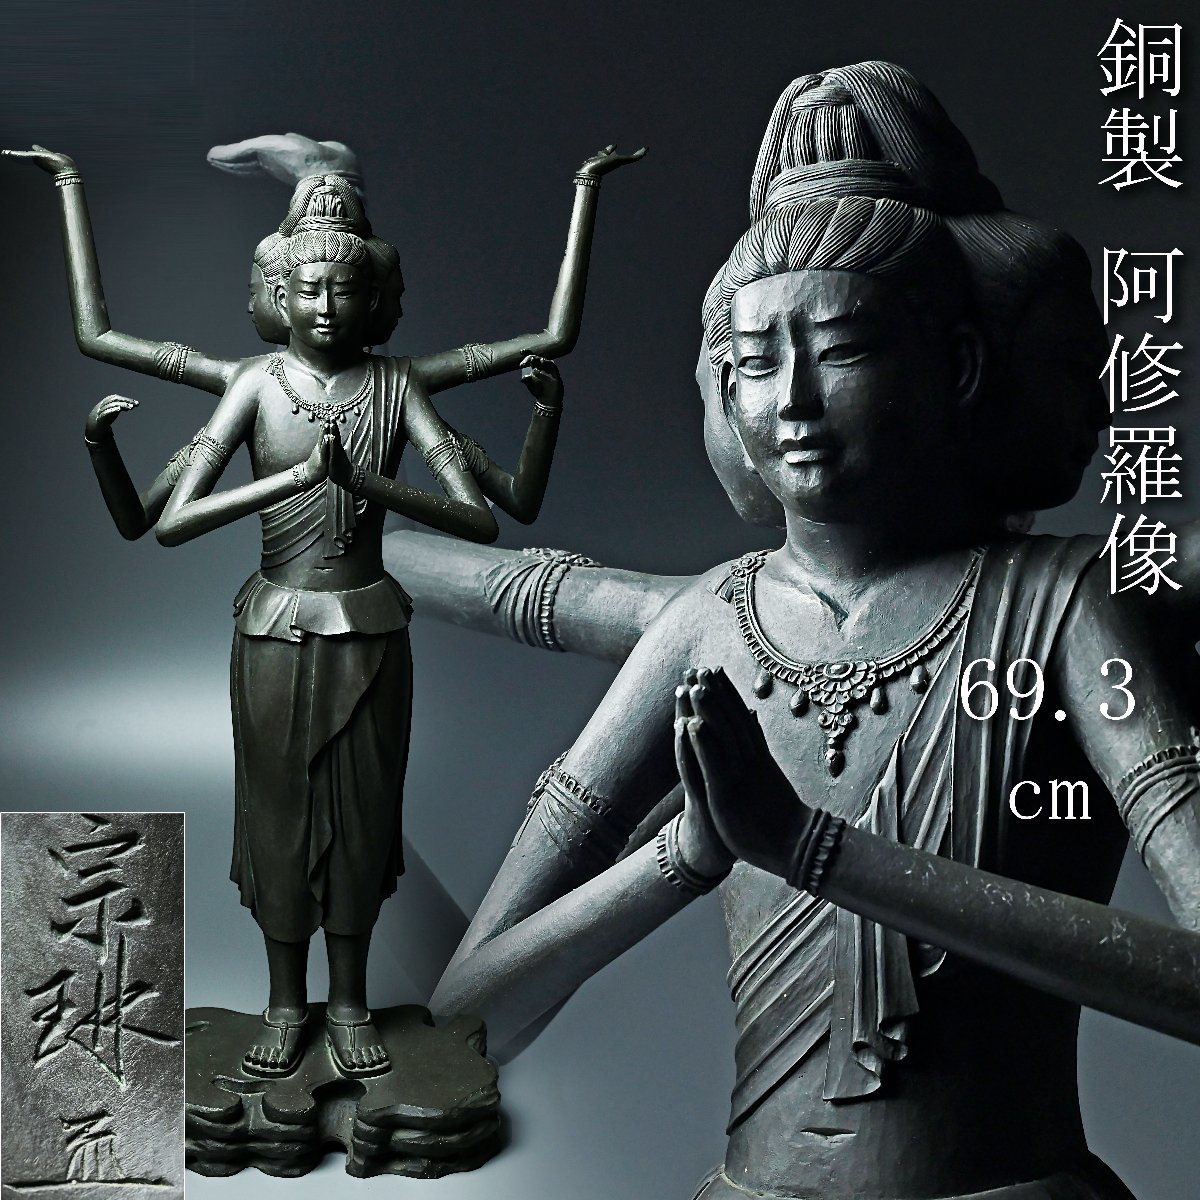 【昊】本物保証 大仏師 「松久宗琳」 銅造 細密彫刻 阿修羅像 仏教美術 高さ69.3cm 重さ20kg[AL24oBs]